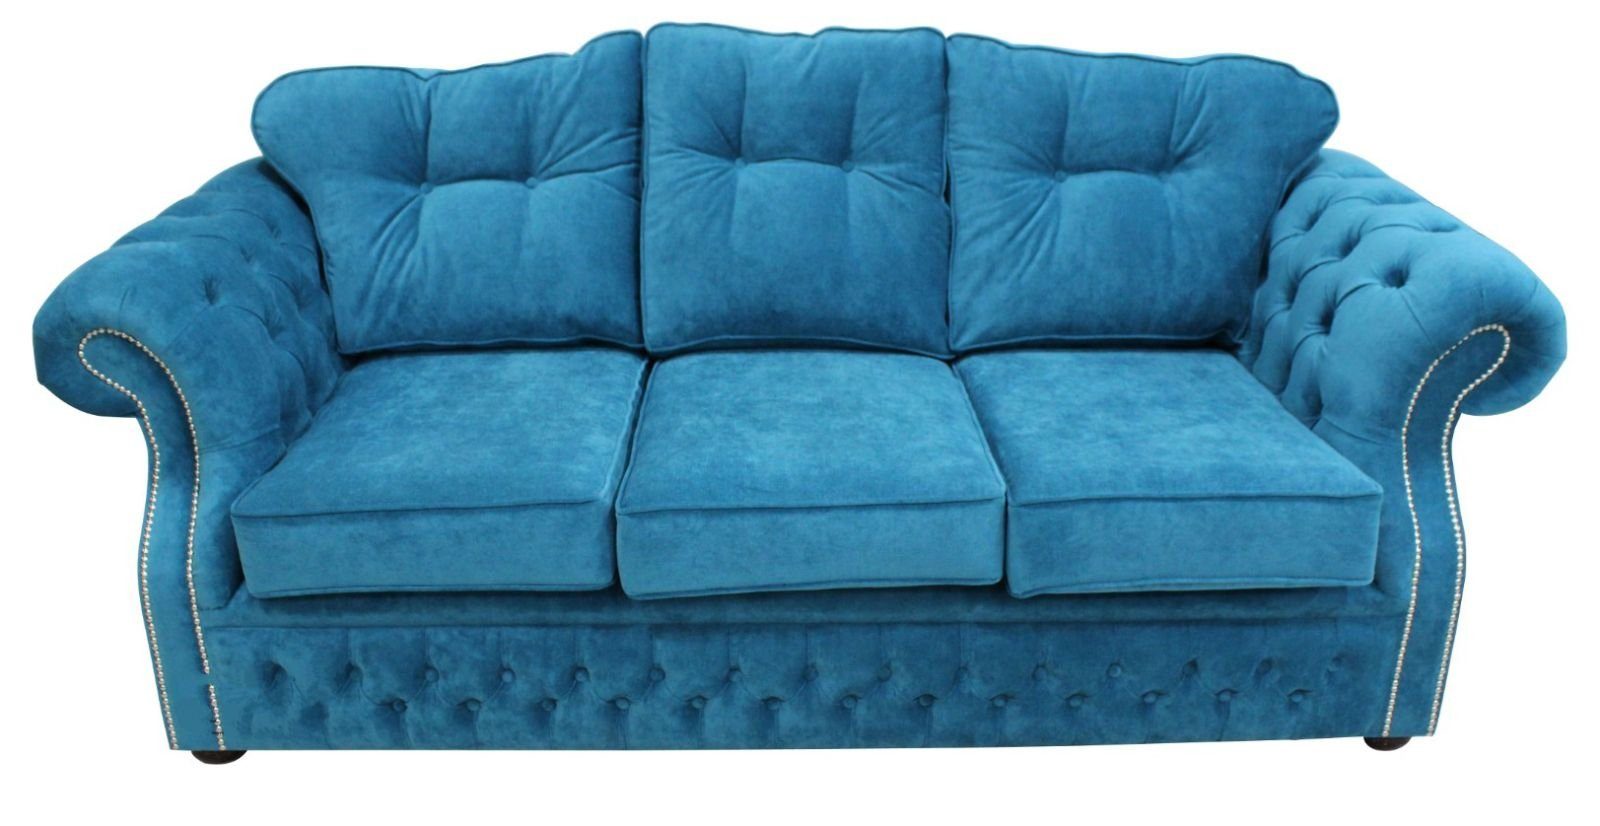 Sofa JVmoebel in Polster Europe Design, Blauer Made luxus Wohnzimmermöbel Sofa Chesterfield